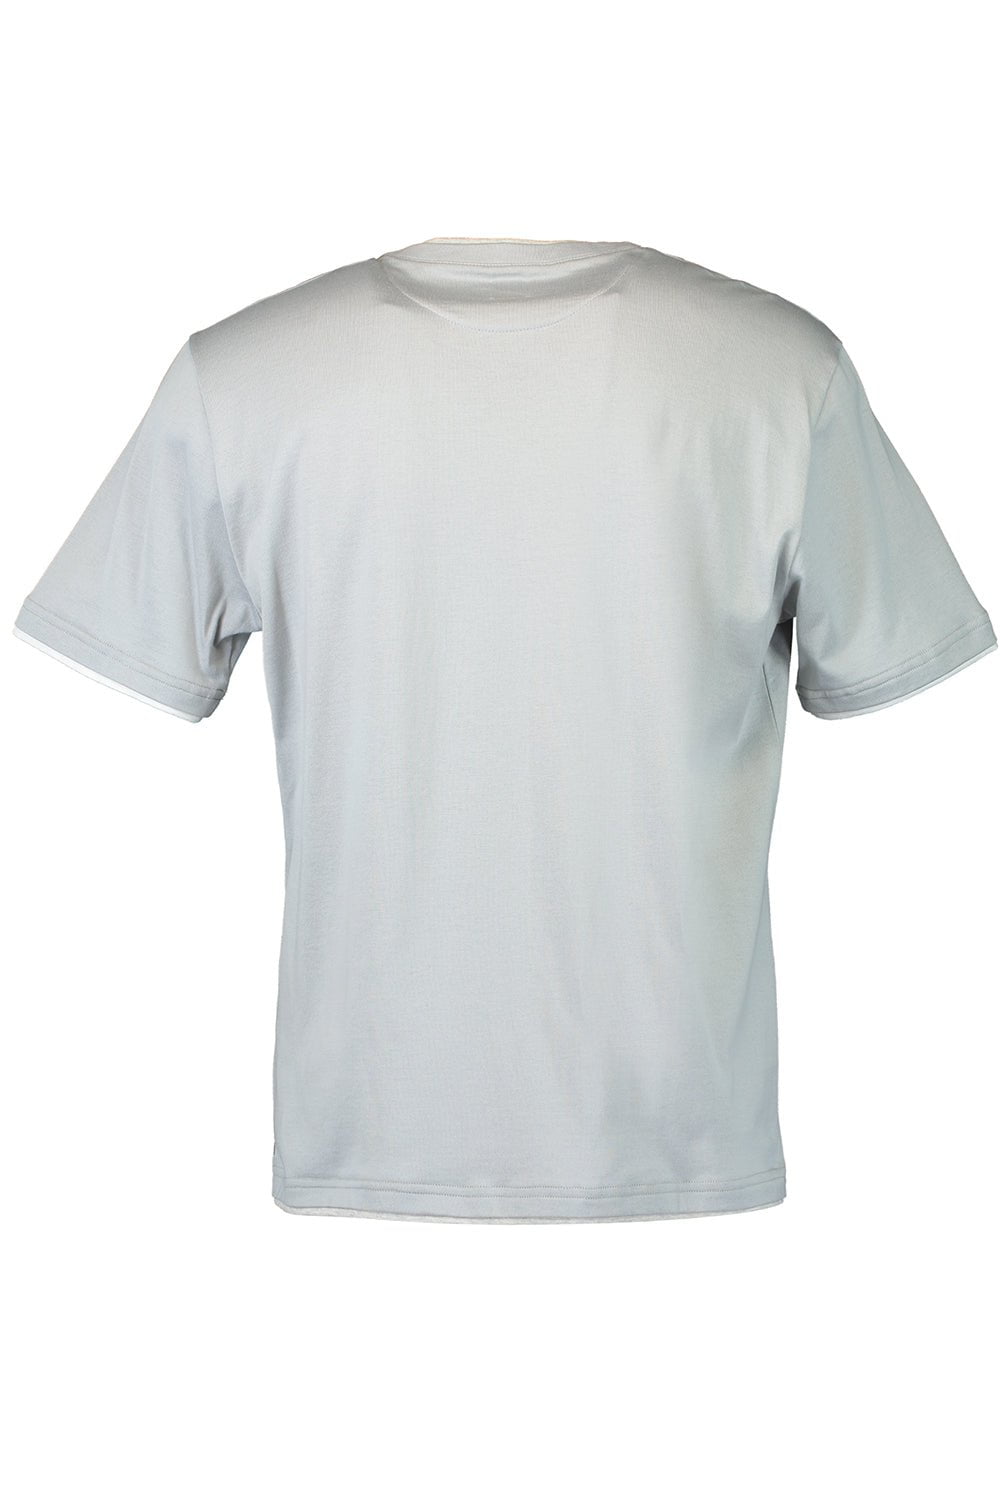 Round Neck T-Shirt - Denim MENSCLOTHINGSHIRT ELEVENTY   